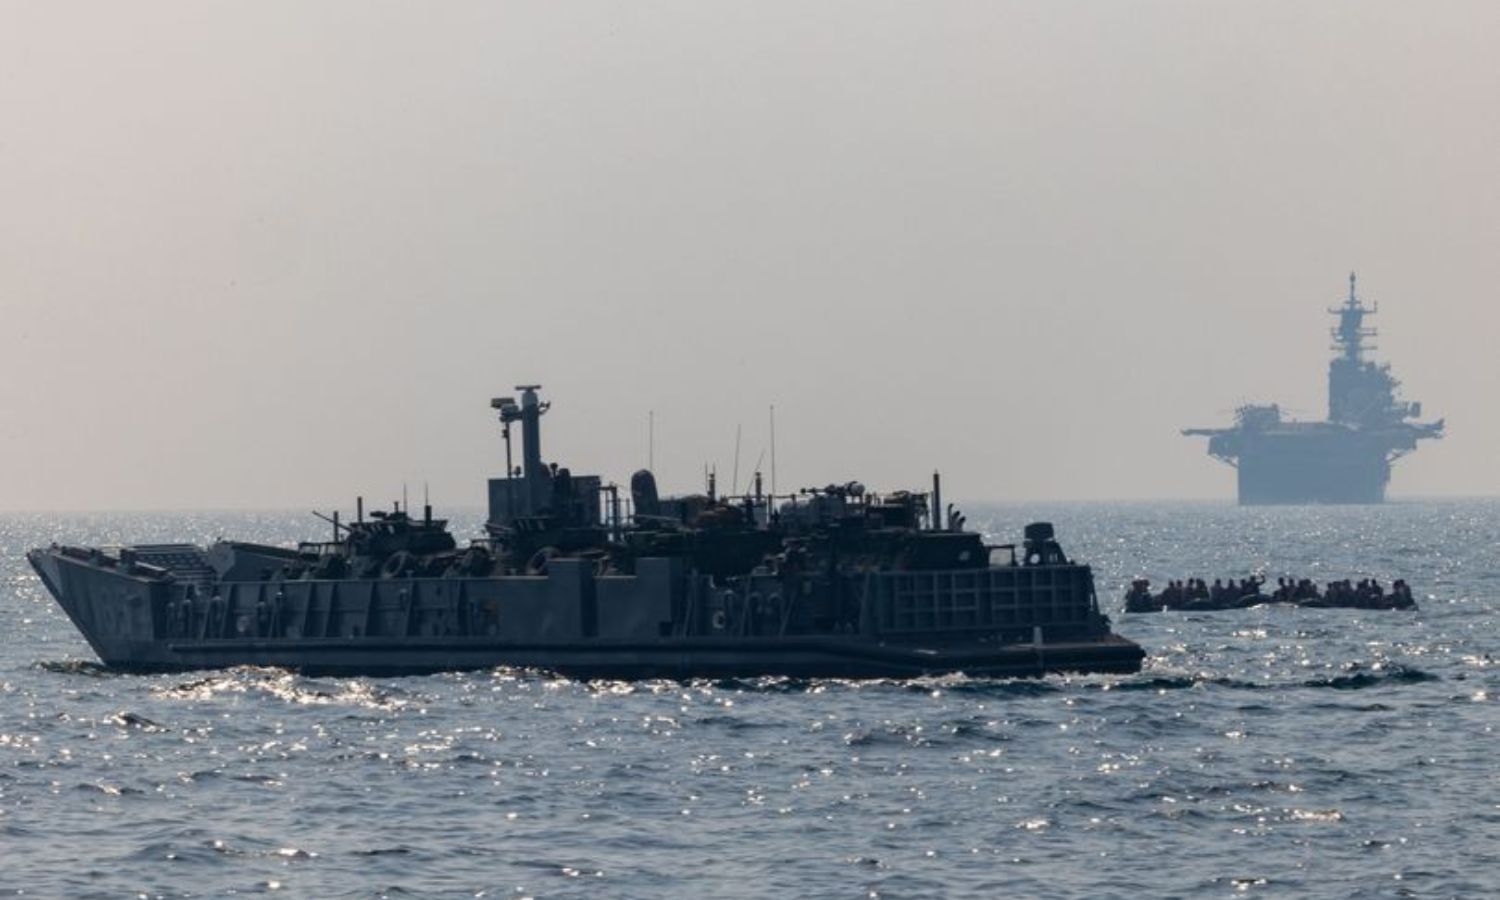 قوات من وحدة المشاة البحرية رقم 26 وقوات العمليات الخاصة التابعة للبحرية الأمريكية تجري تدريبات بالقوارب الصغيرة في منطقة الأسطول الخامس بالقرب من السواحل البحرينية- 6 من تشرين الأول 2023 (سينتكوم)